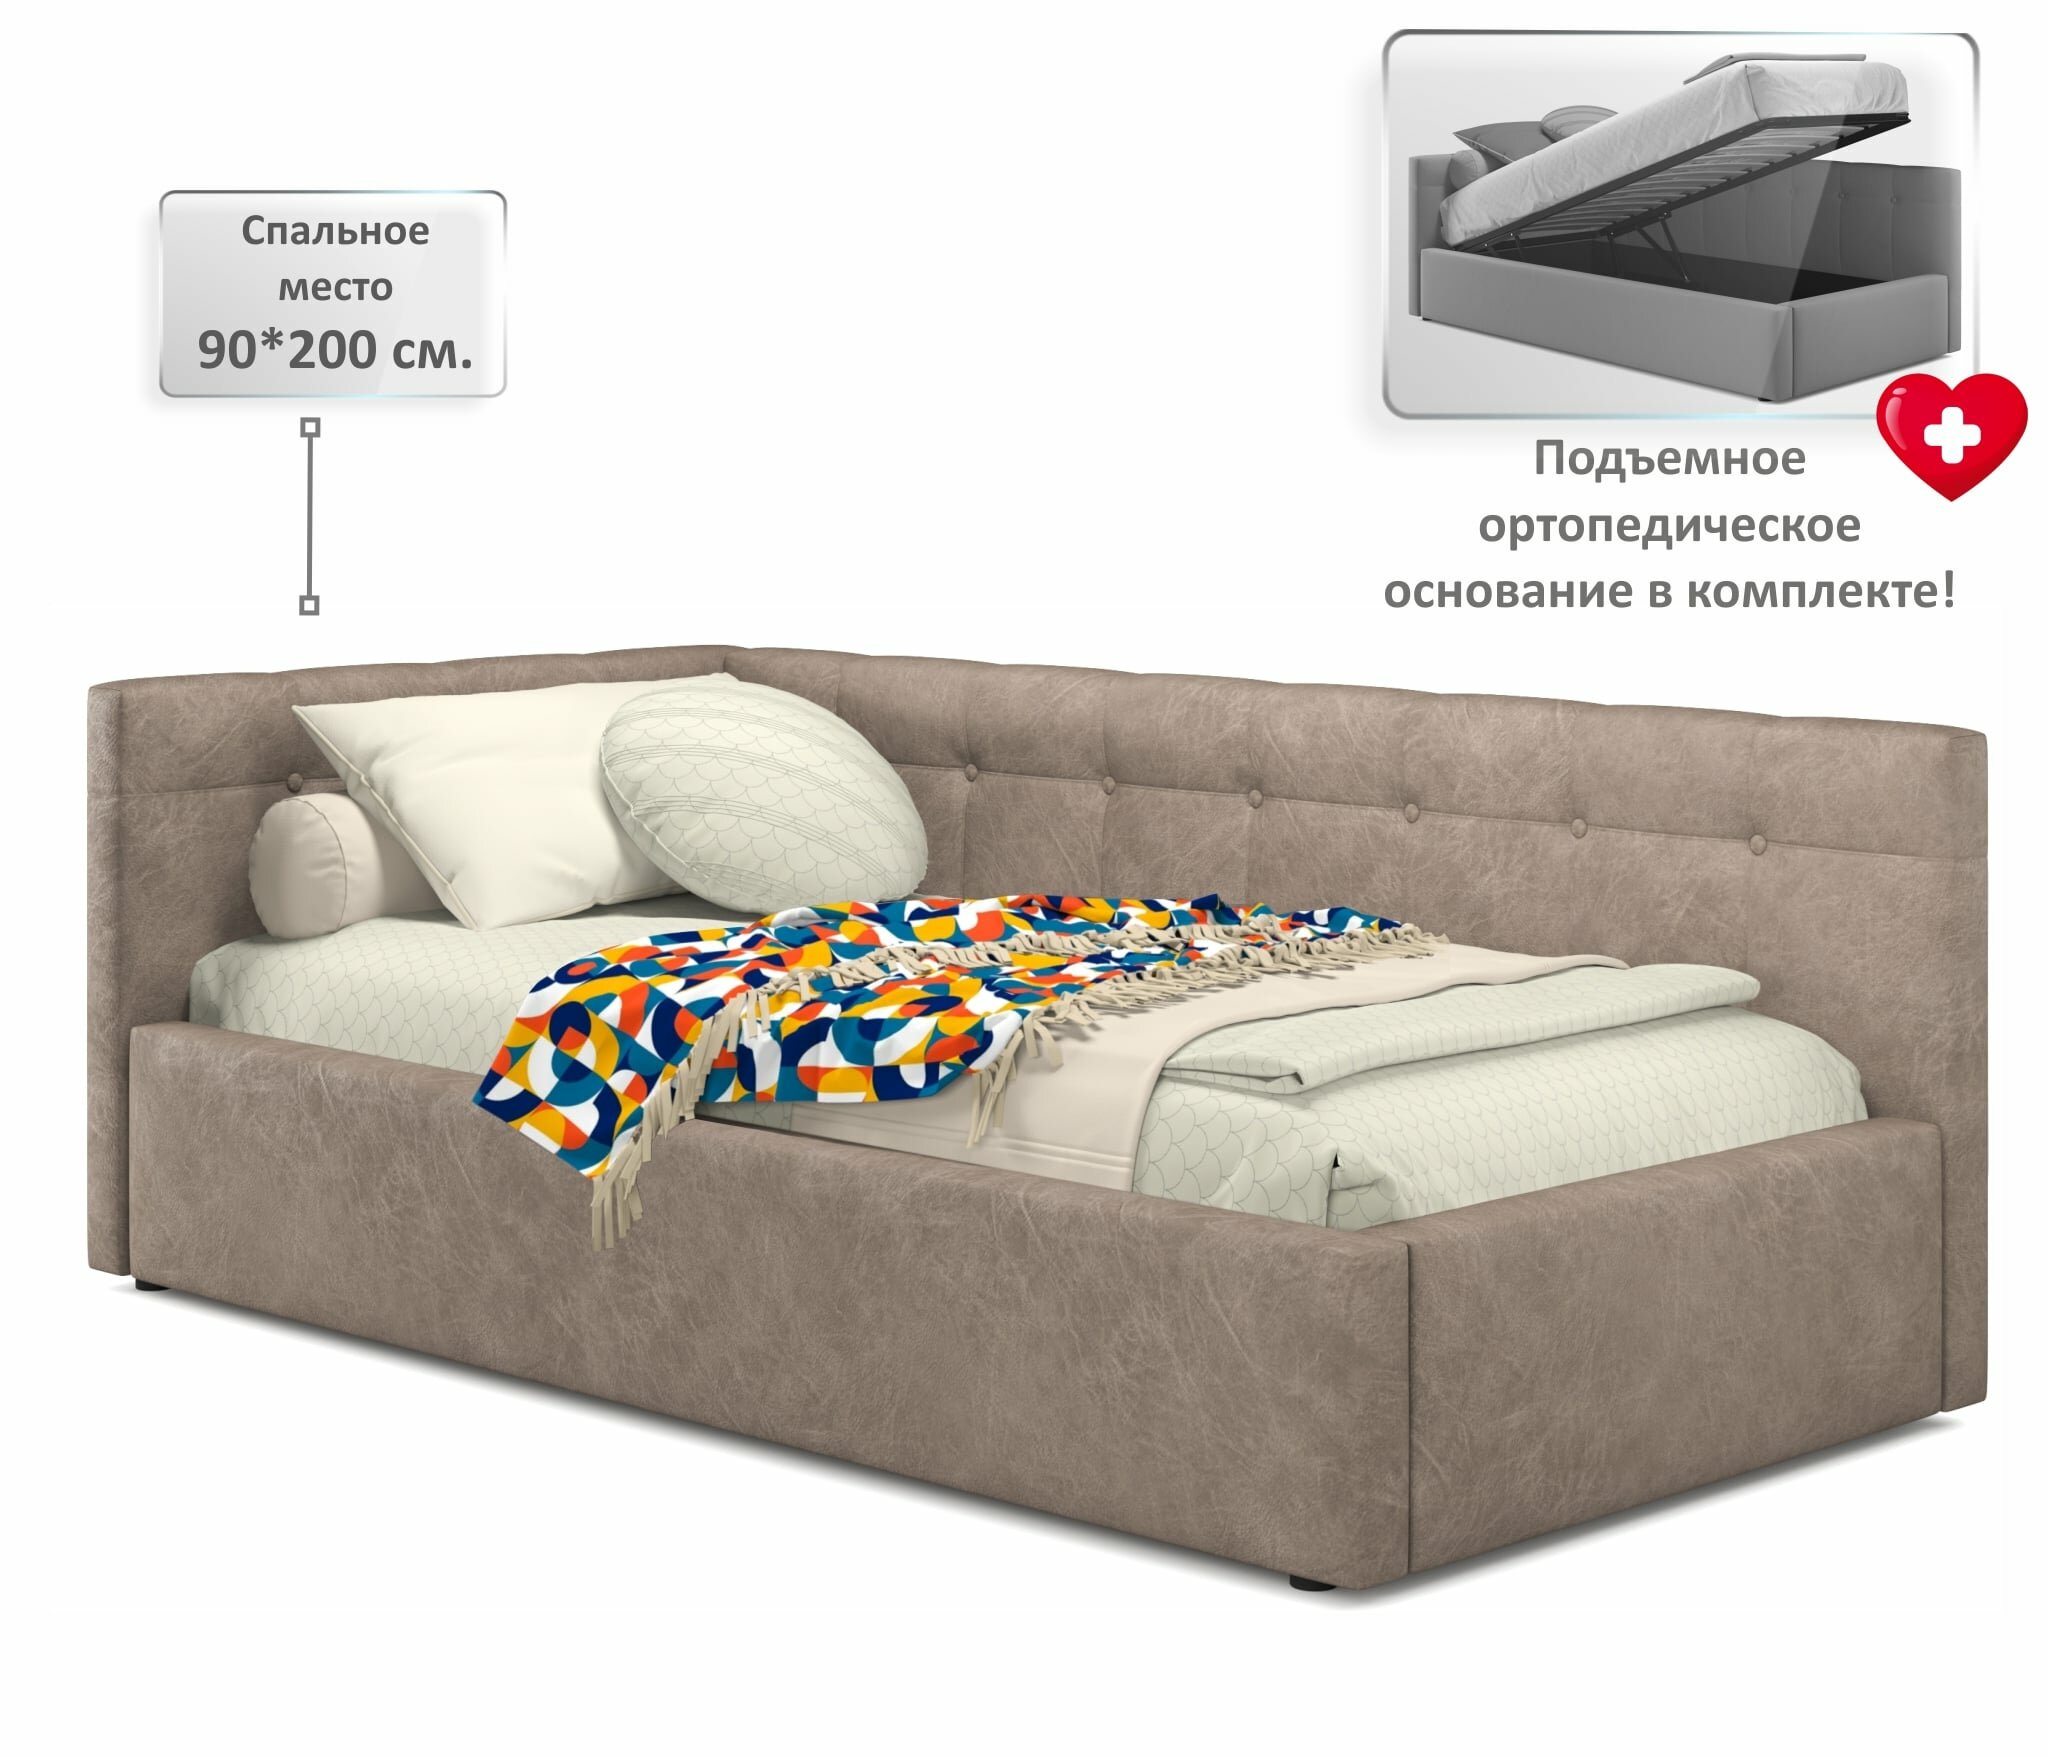 Односпальная кровать-тахта Bonna 900 кожа латте угловая Zeppelin, с подъемным механизмом, 90х200, мягкая из экокожи, с ящиком для хранения